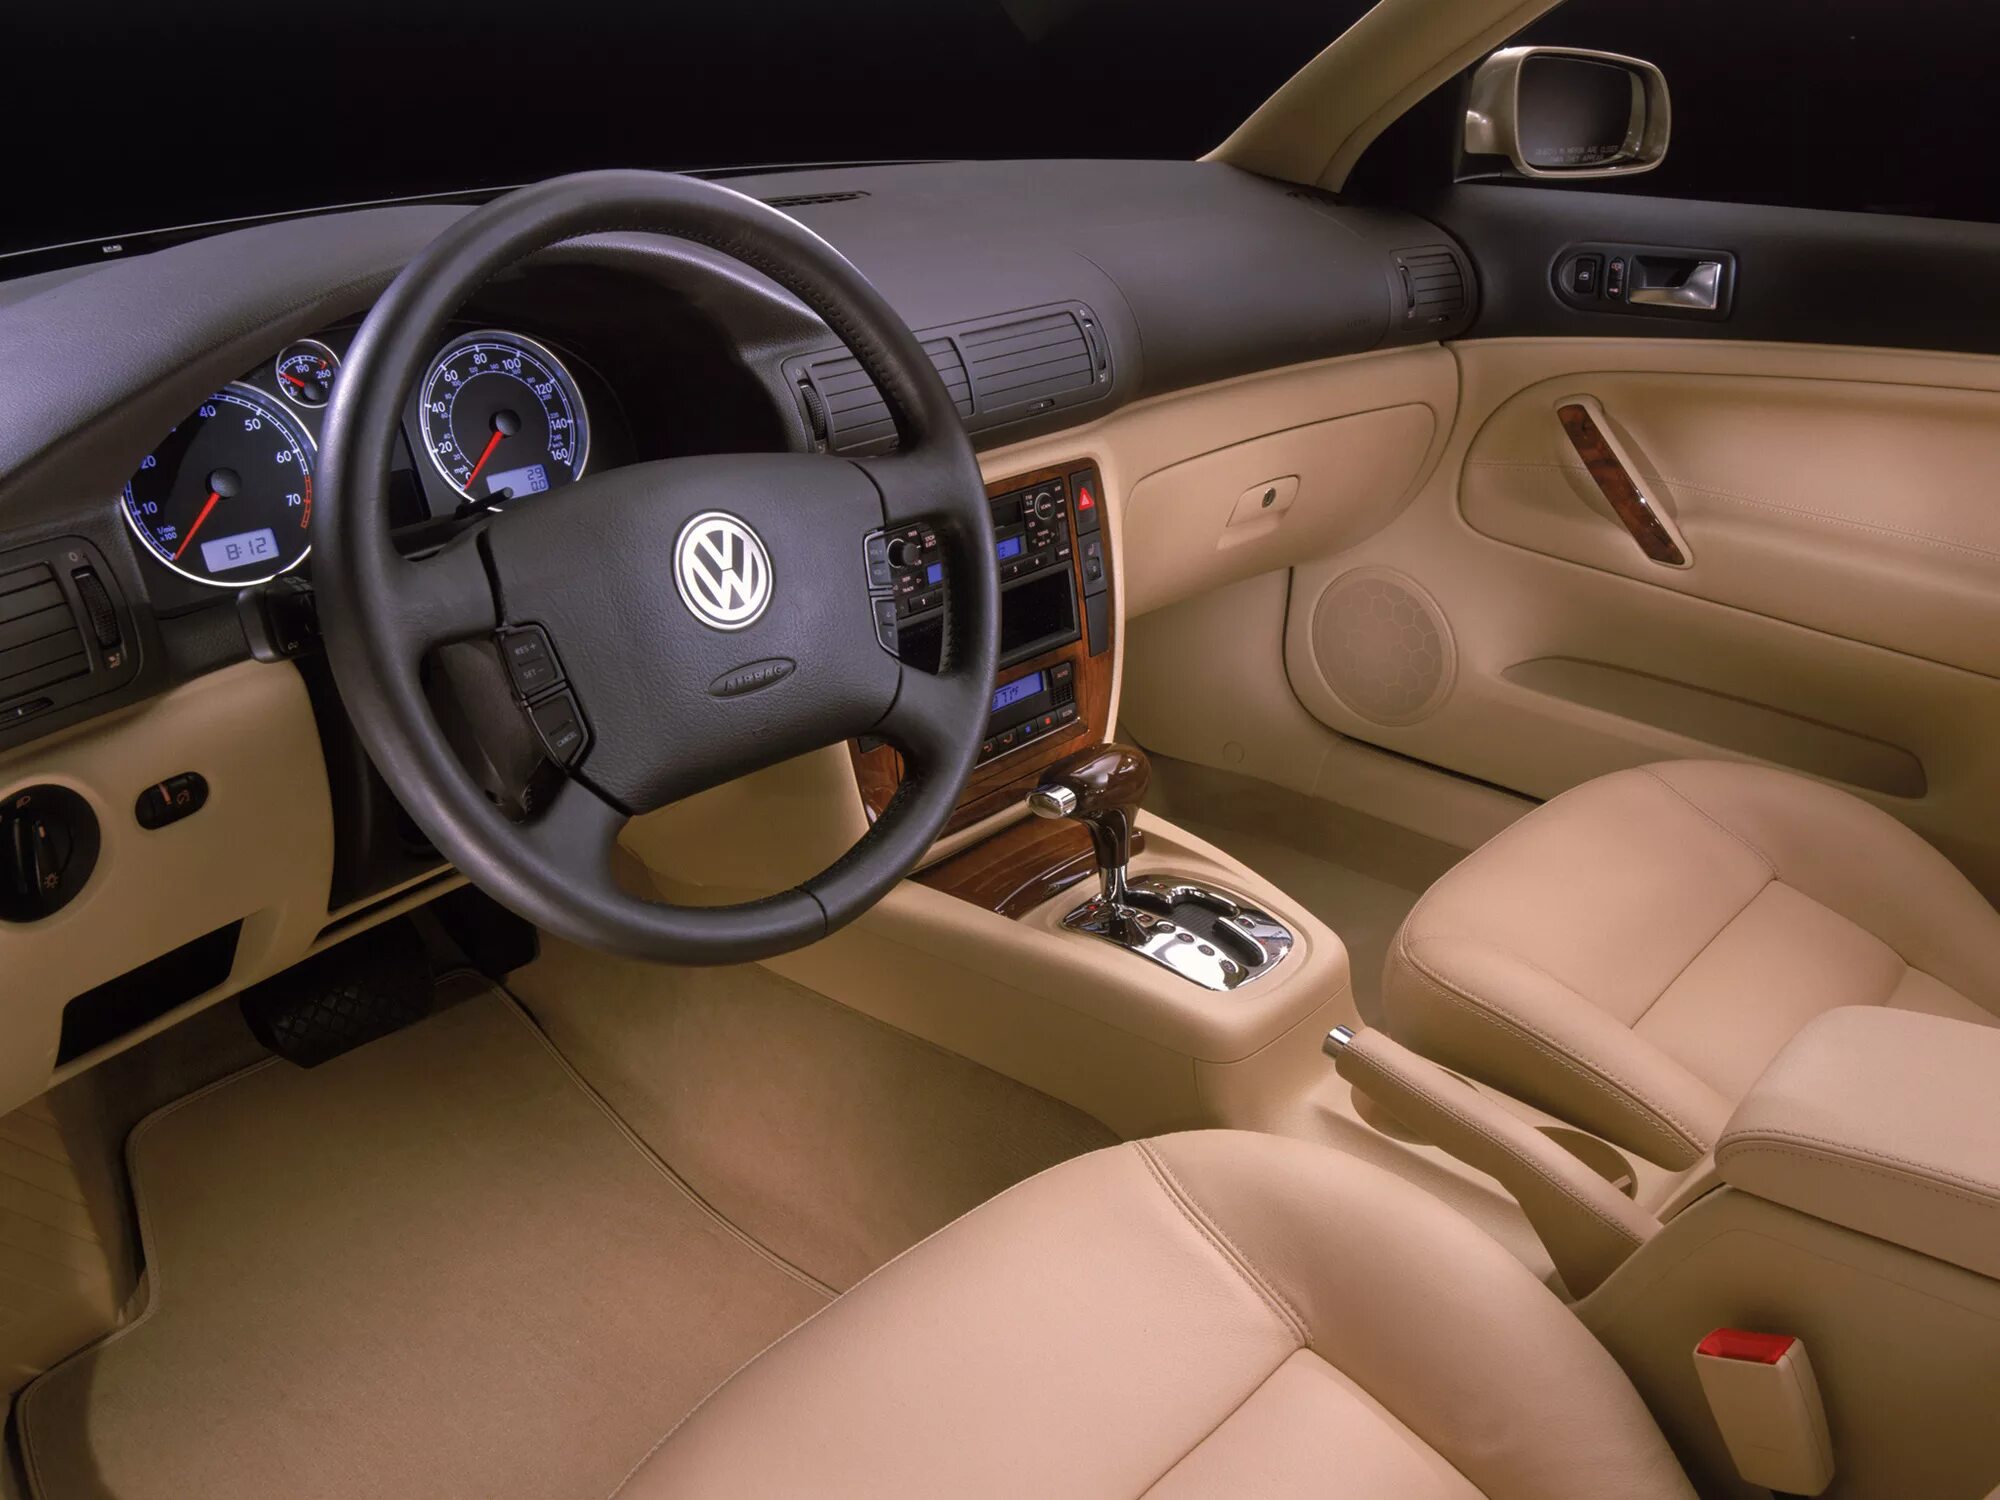 Volkswagen Passat b5 салон. Volkswagen Passat b5 седан салон. Volkswagen Passat b5+ салон светлый. Volkswagen Passat 2000 Interior. Пассат в5 1.8